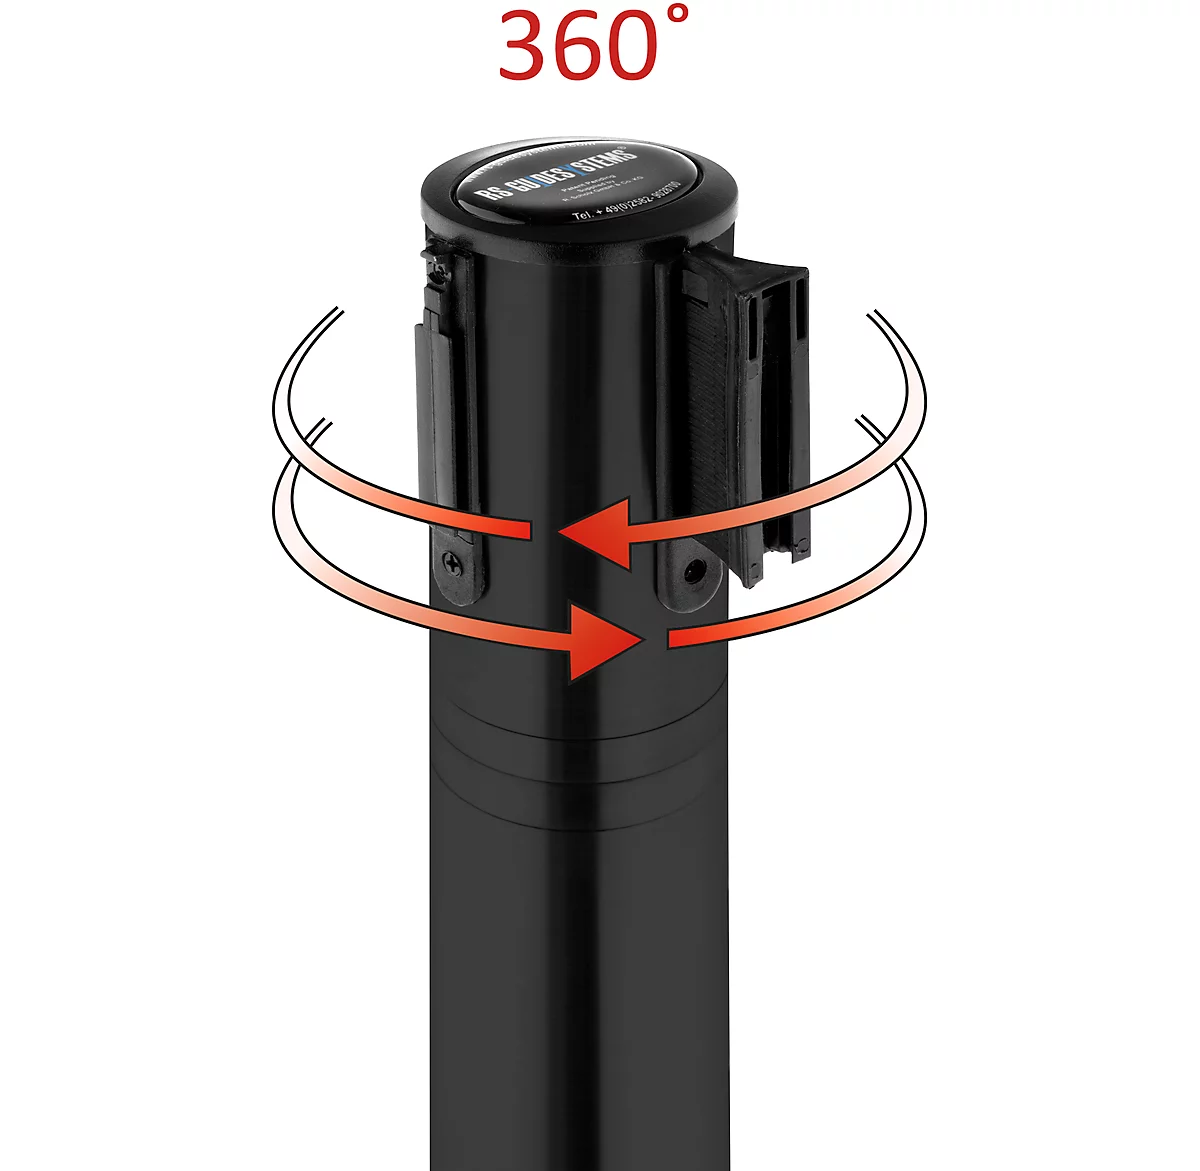 Absperrpfosten, Kopf um 360° drehbar, Gurt bis 2,3 m ausziehbar, Gurtkassette & Bremse, L 1000 mm, Metall, Gurt rot